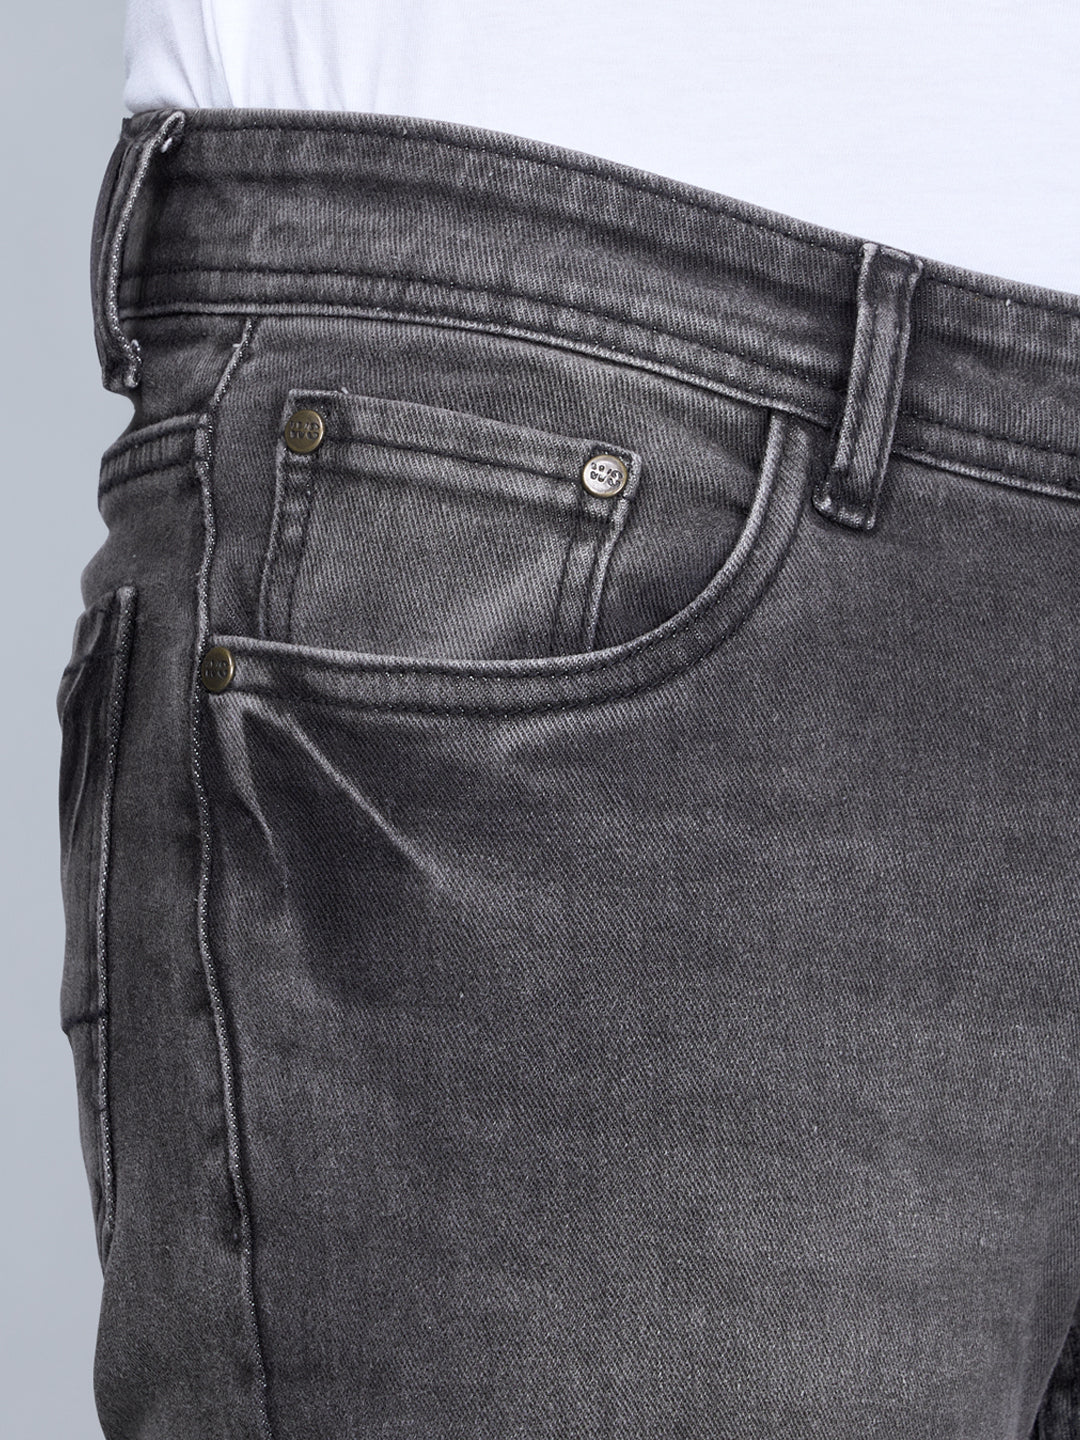 STEAMZ Carbon Mens Comfort Fit Jeans